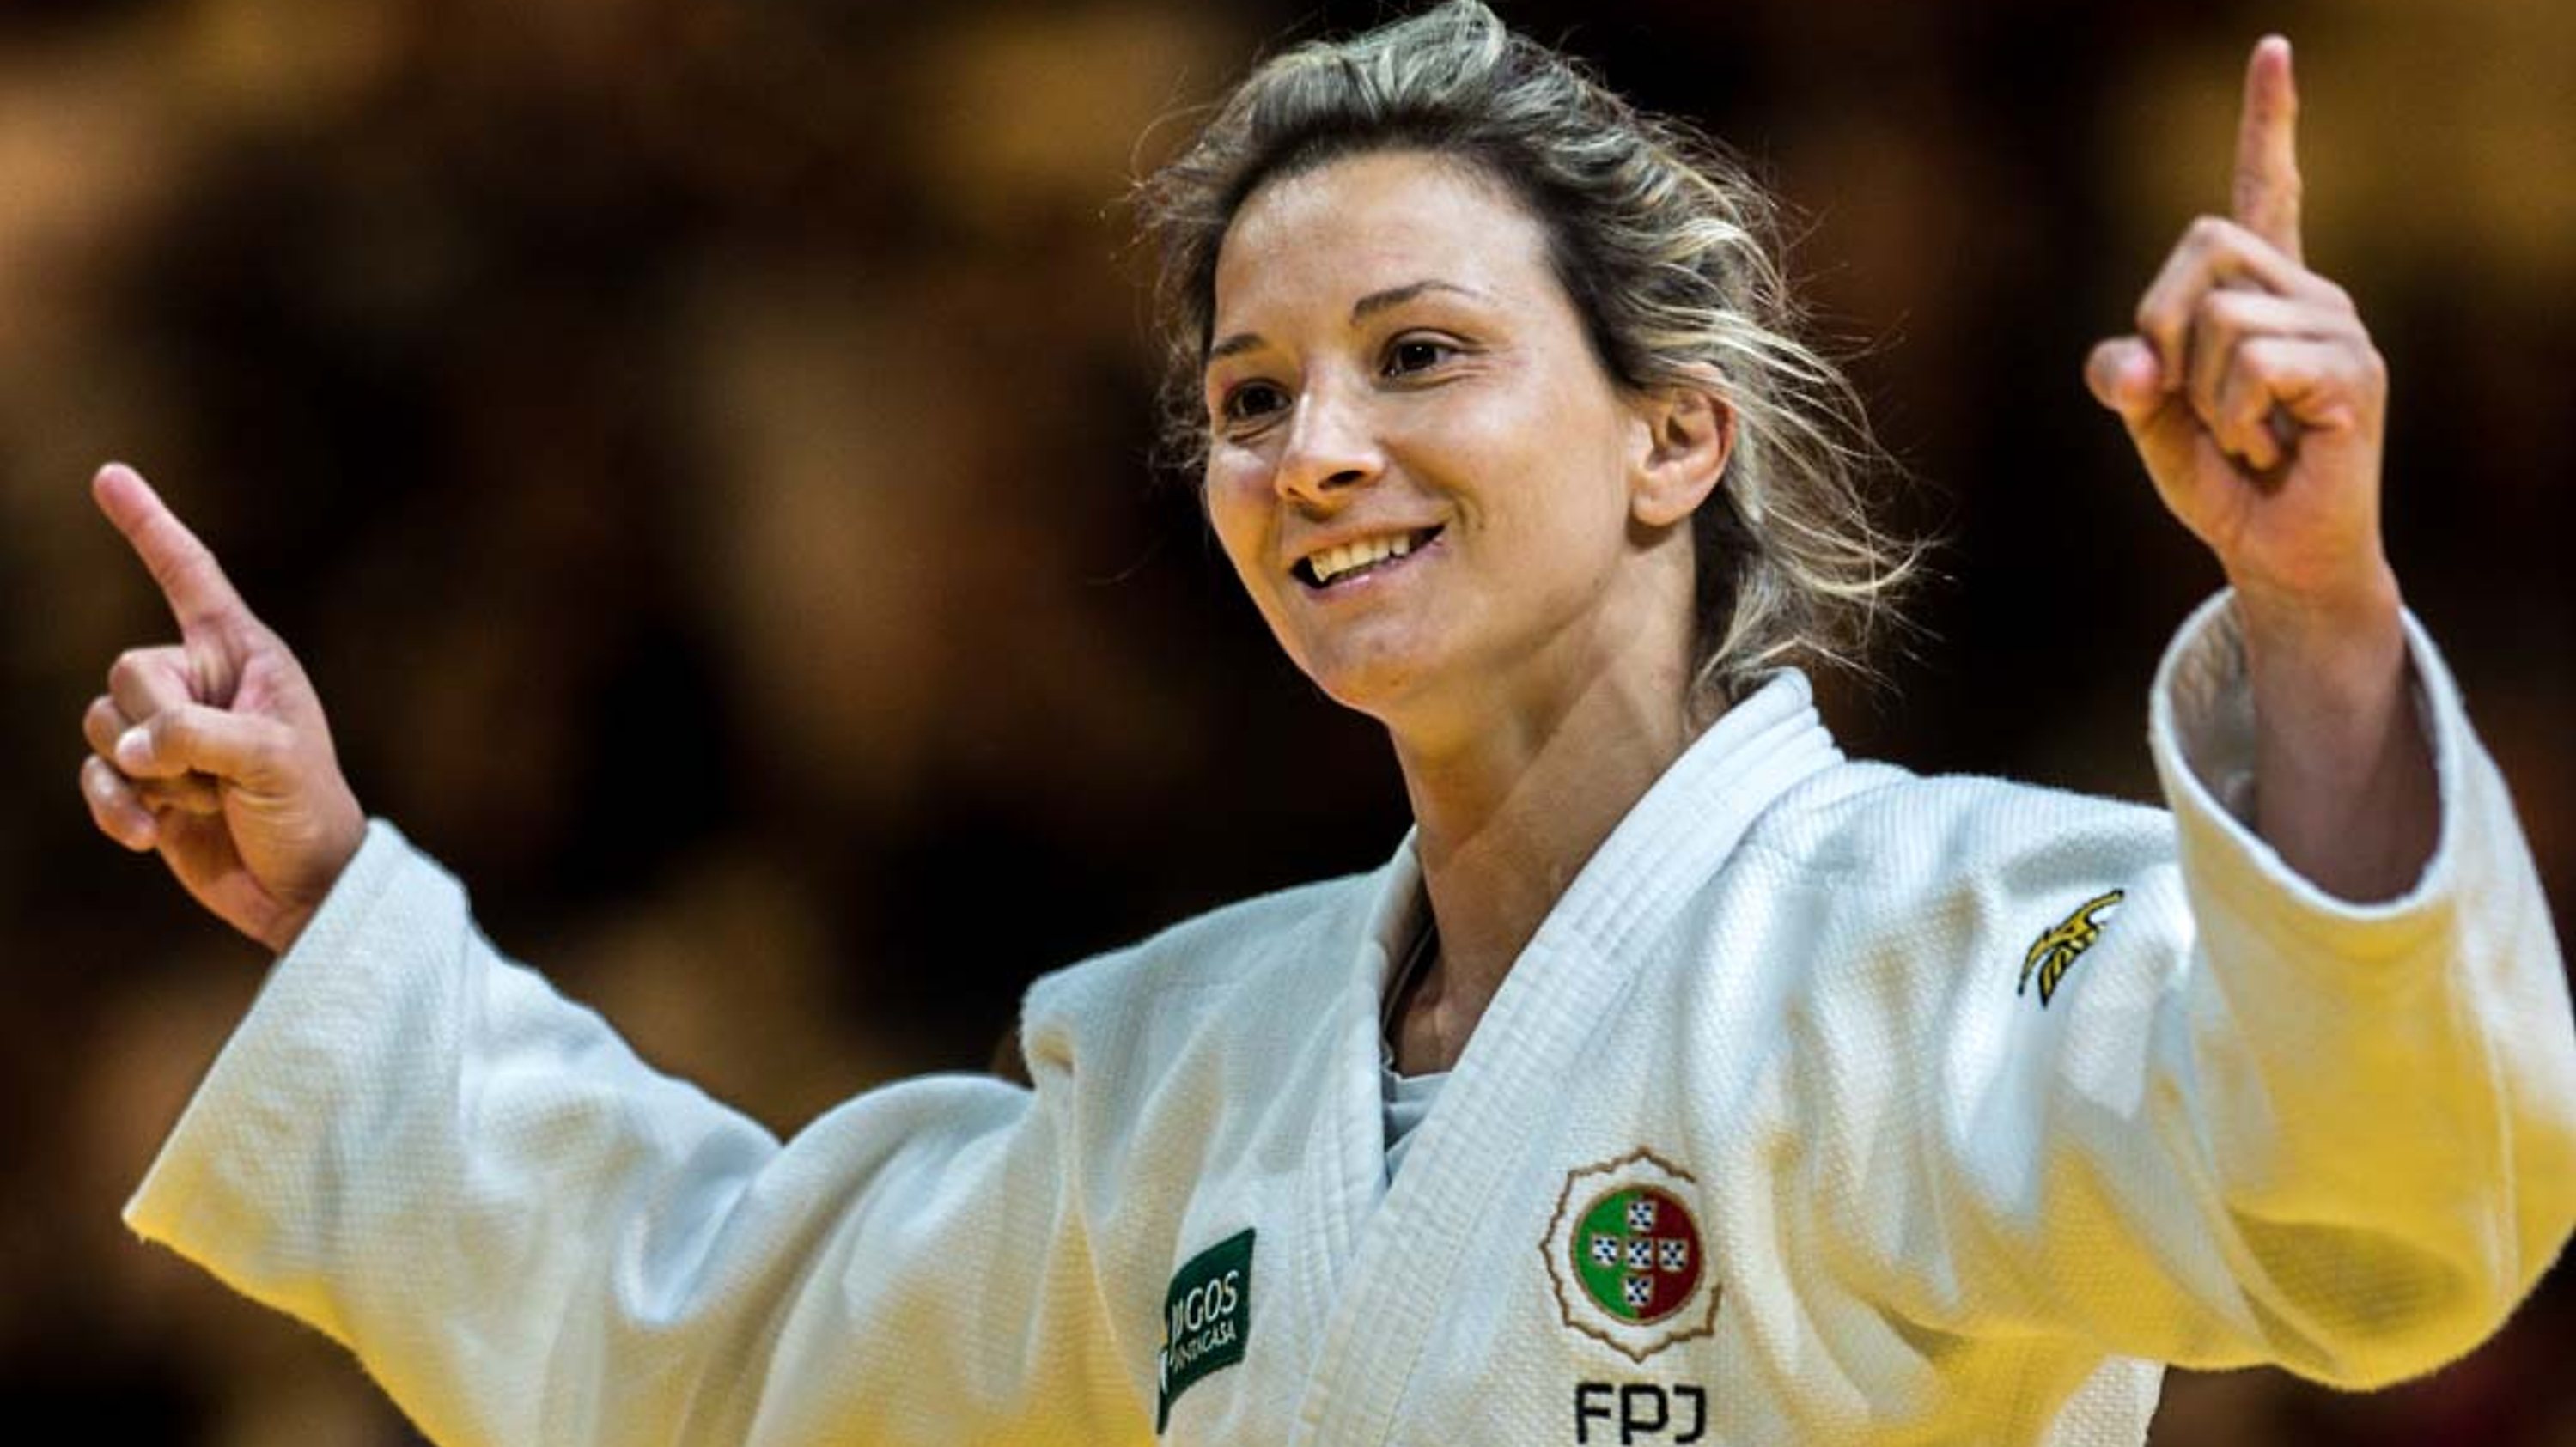 A judoca do Benfica foi homenageada pela União Europeia de judo por ocasião dos Europeus, face às conquistas na modalidade e em especial no campeonato continental